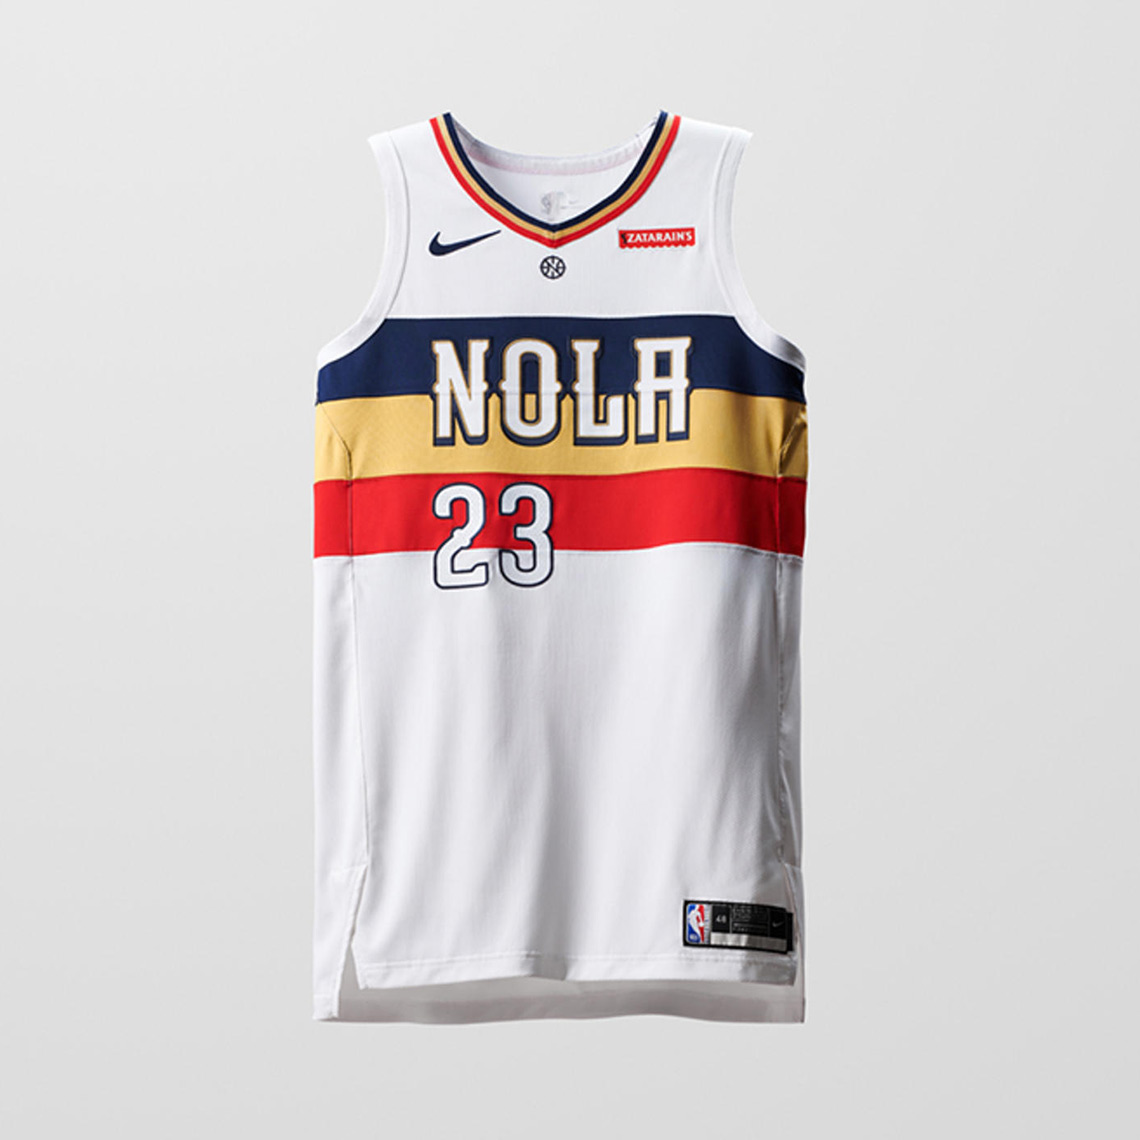 nba jersey design 2019